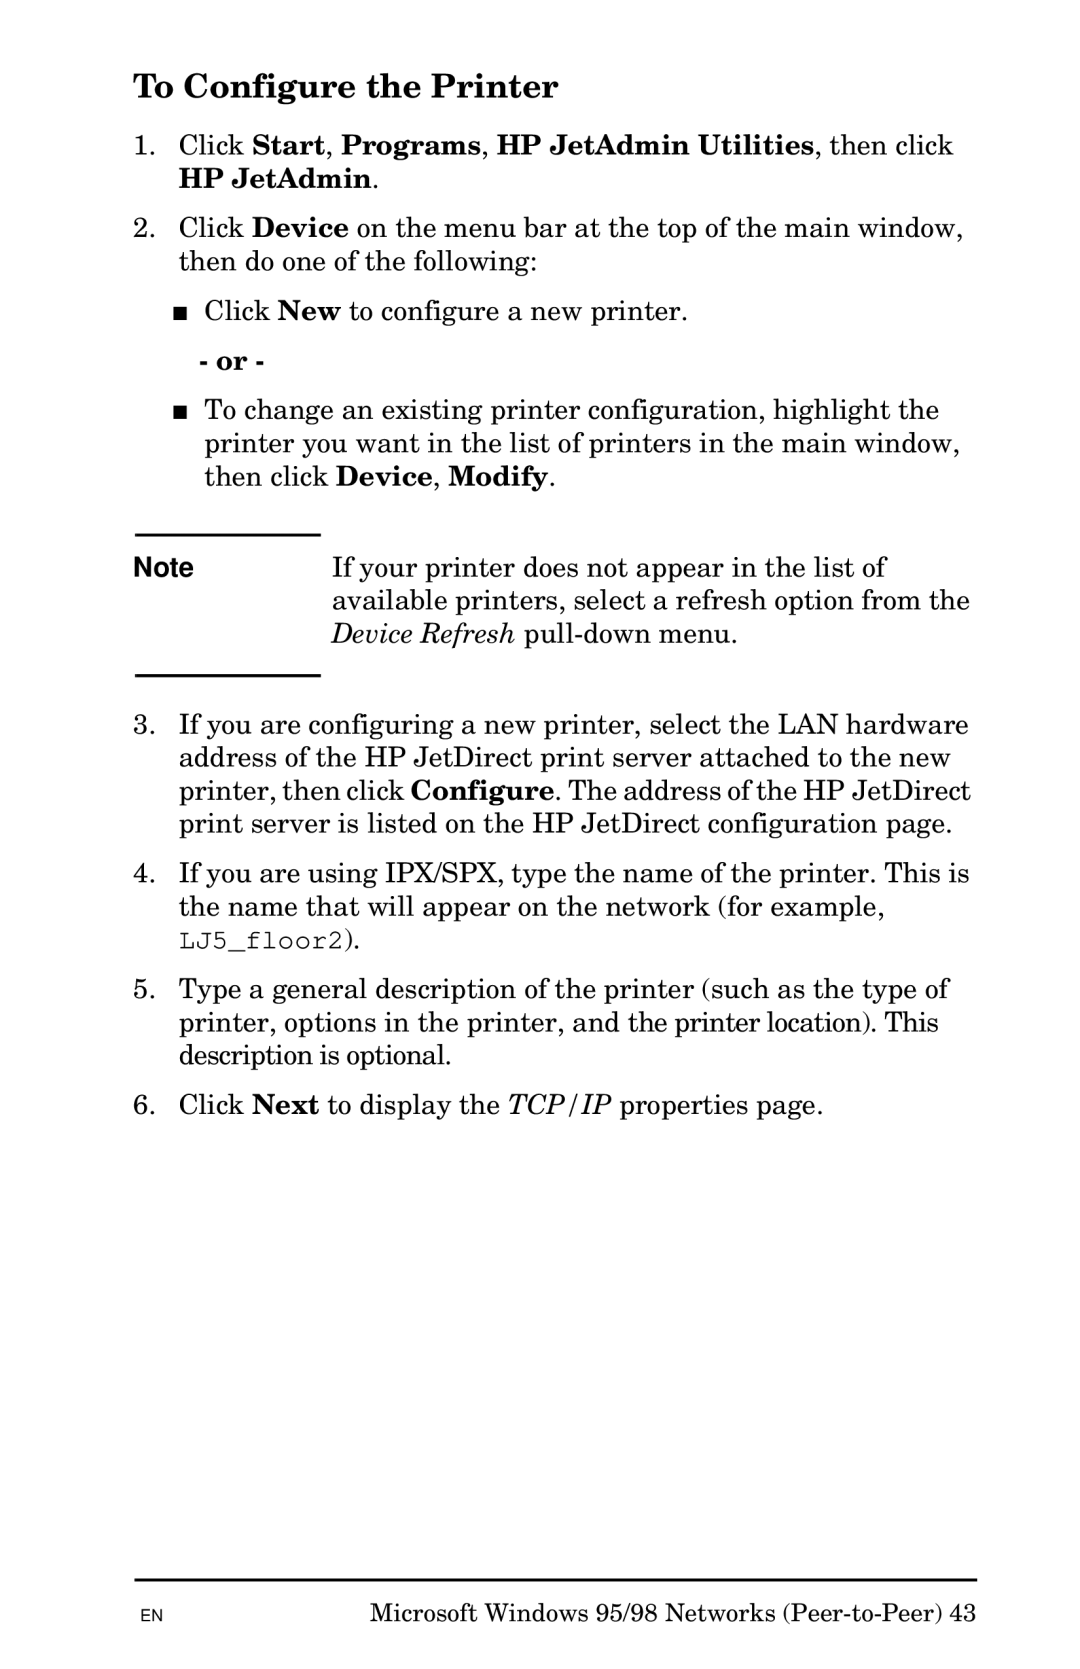 HP Jetadmin Software for OS/2 manual LJ5floor2 